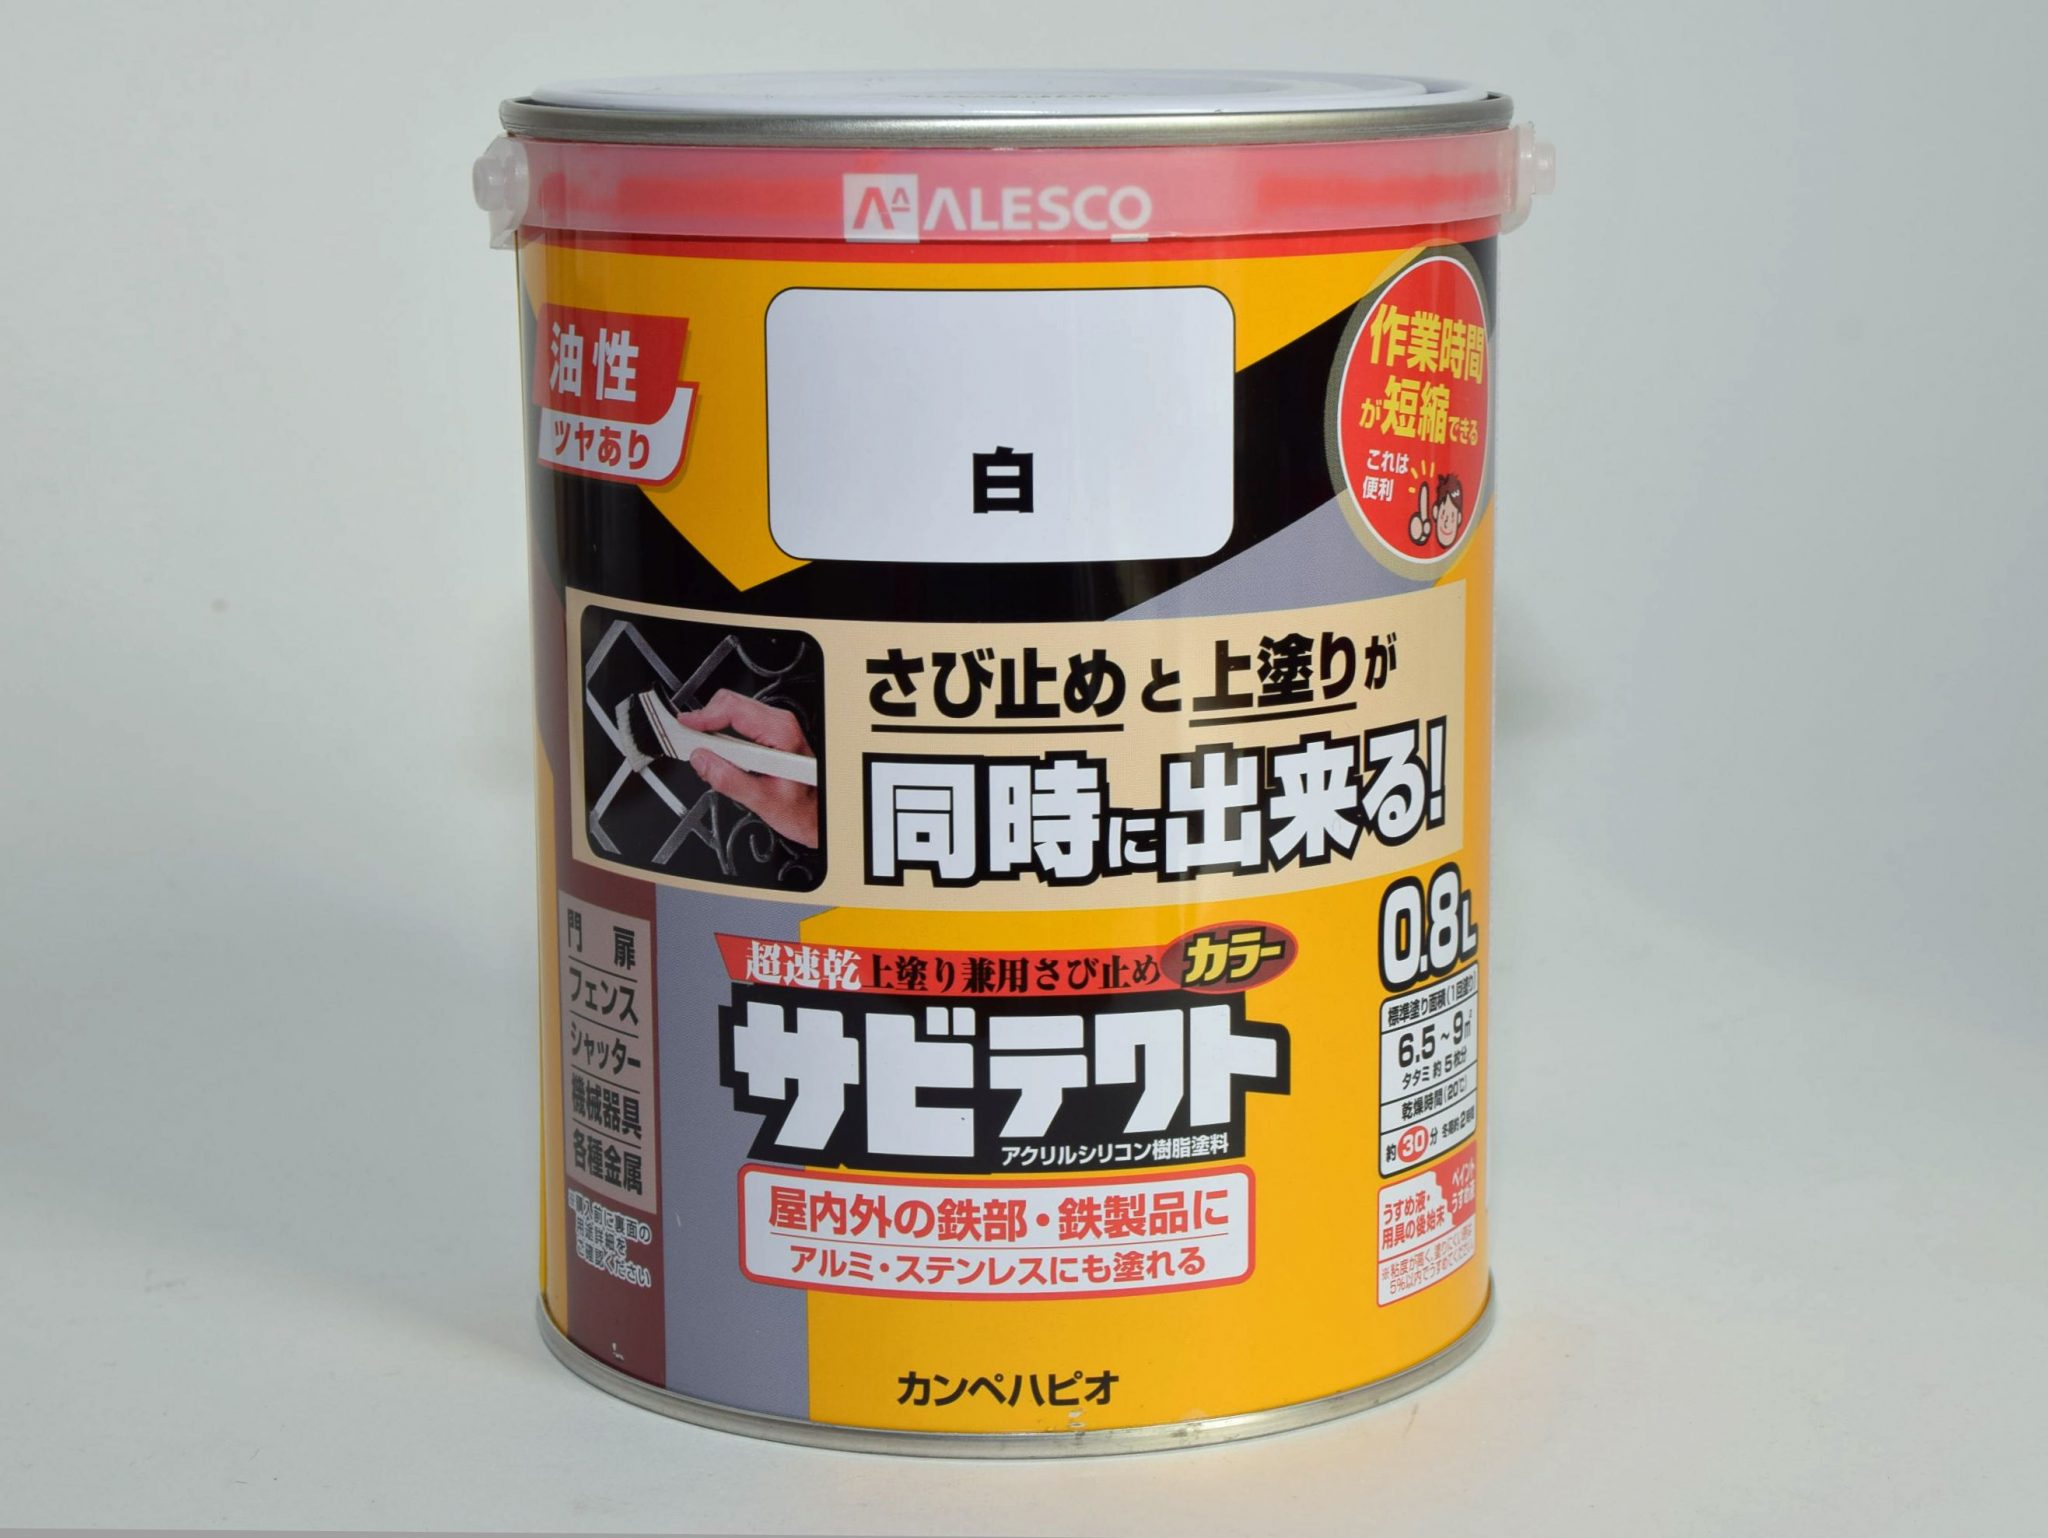 カンペハピオ - サビテクト - ブルー - 3L 4缶セット